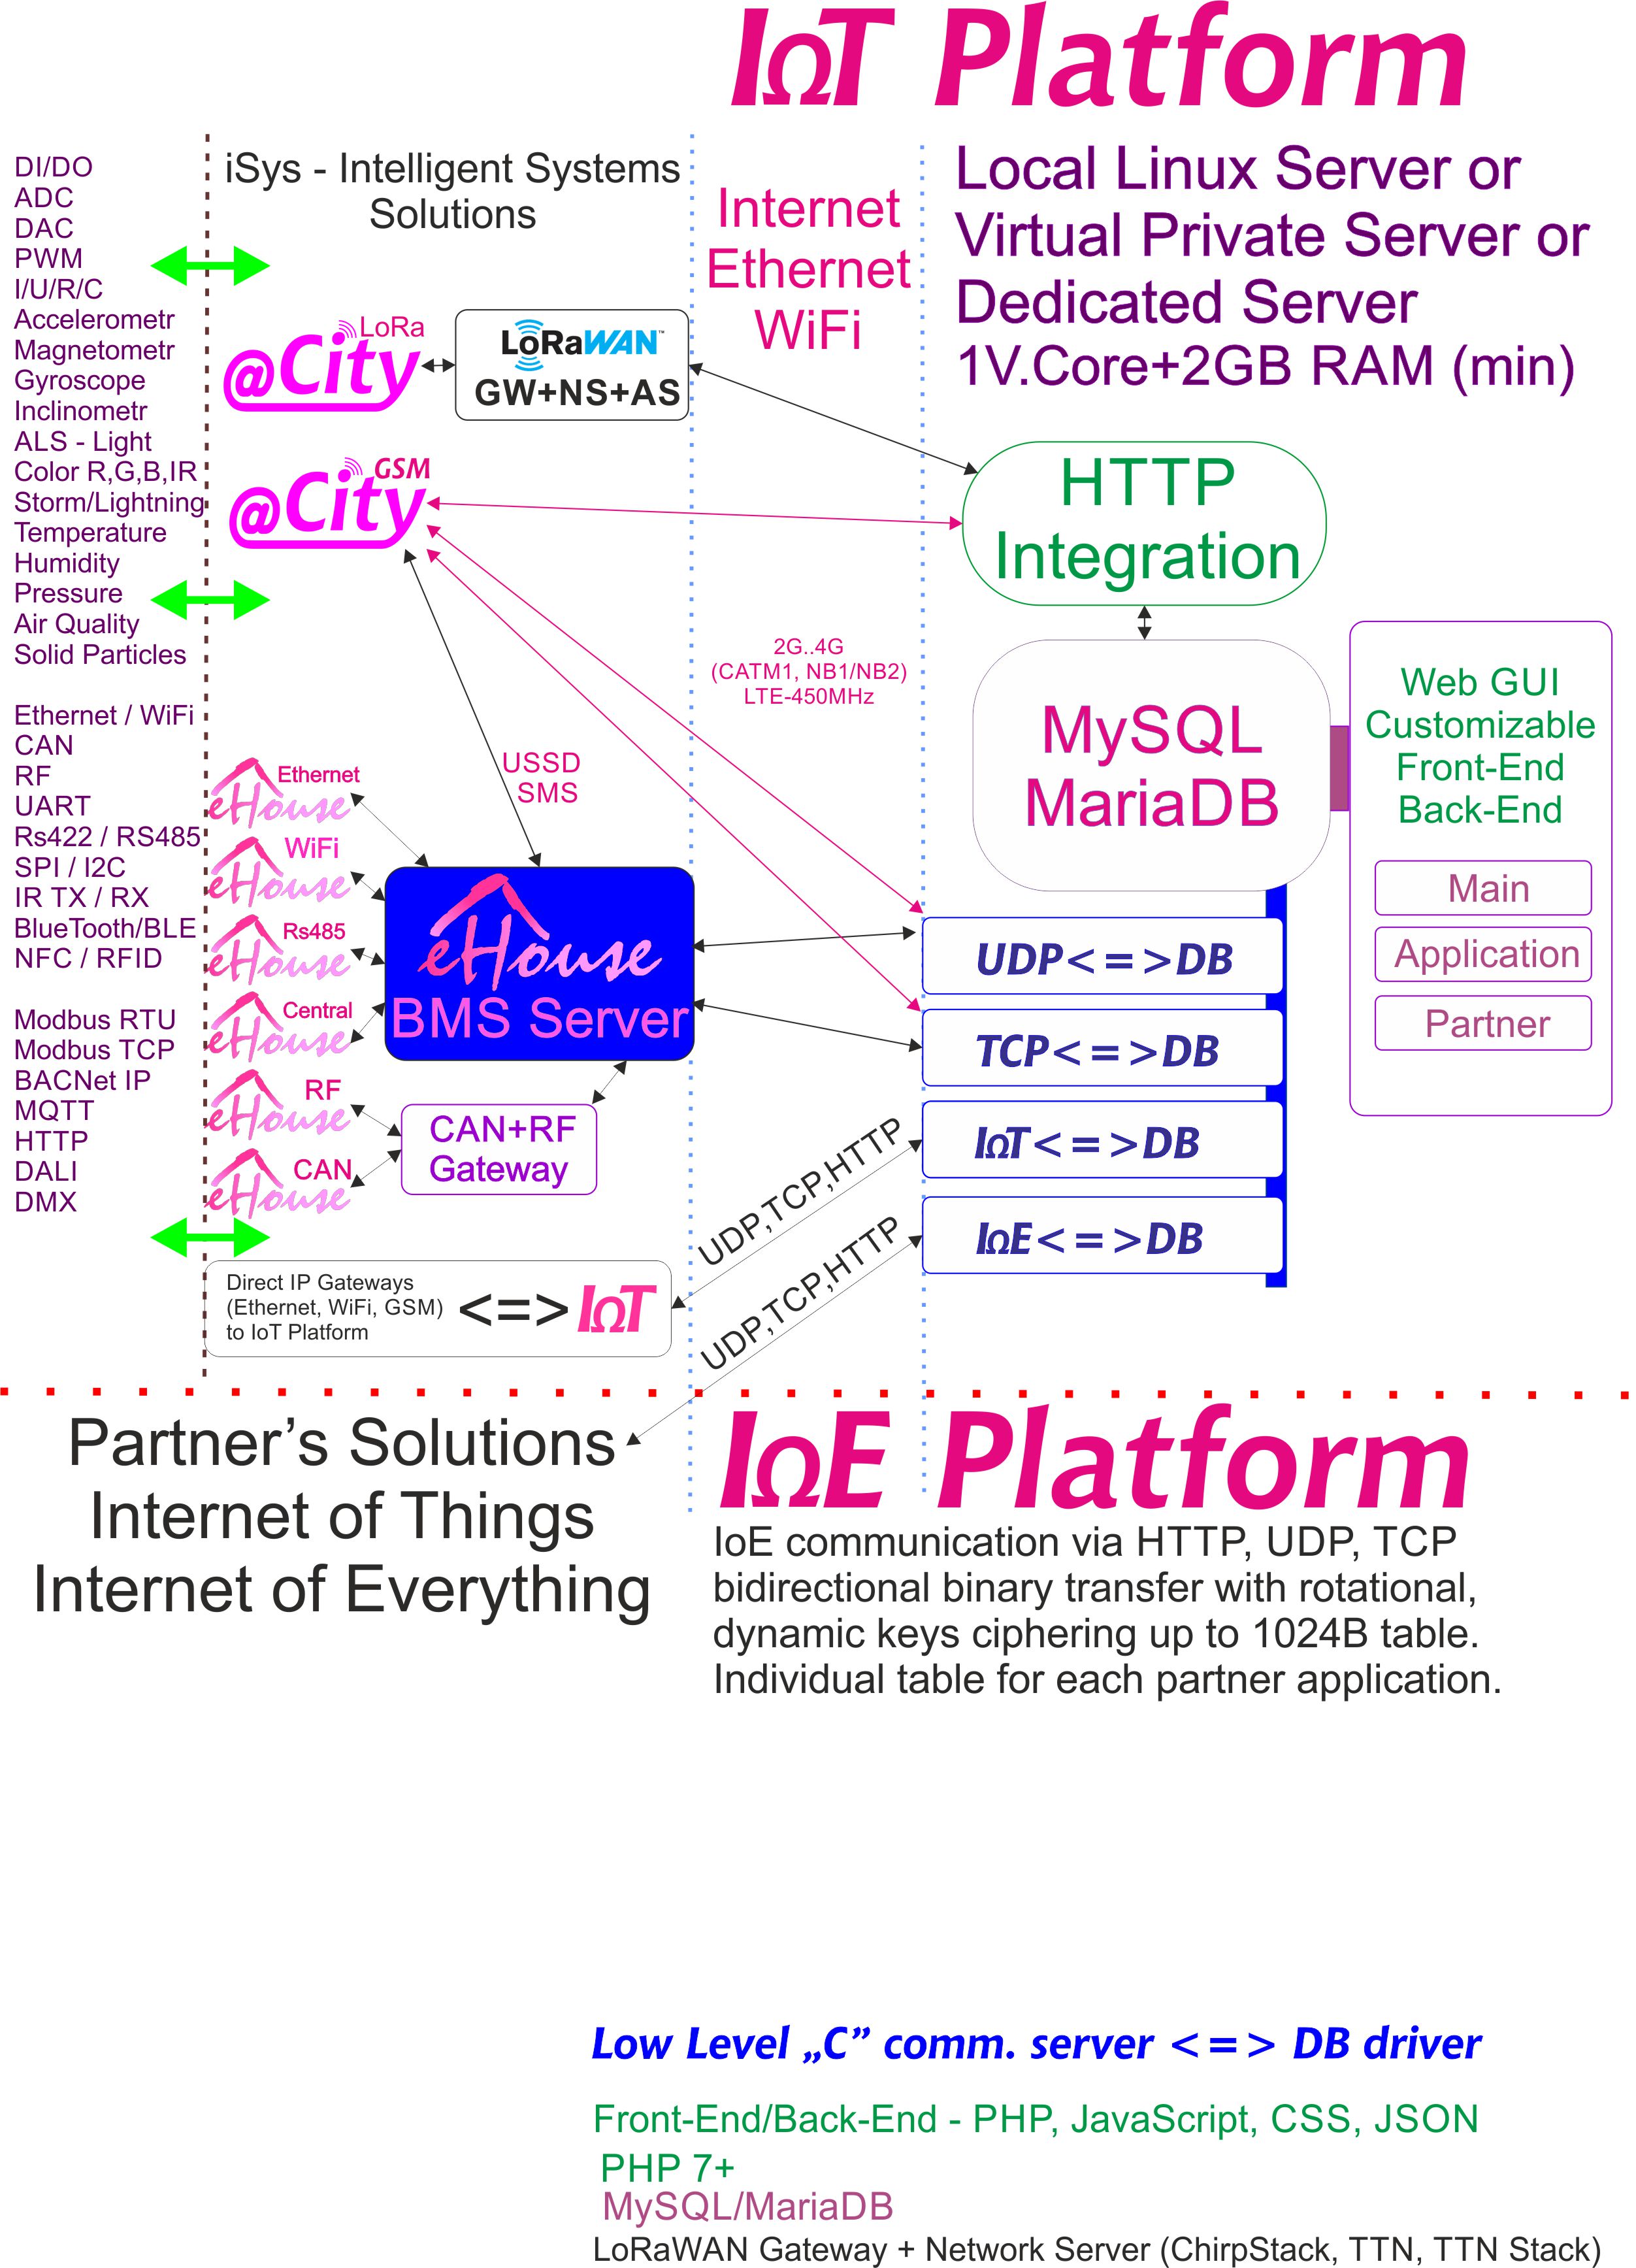 IoE, platforma IoT určená pre každého partnera s individuálnym šifrovaním